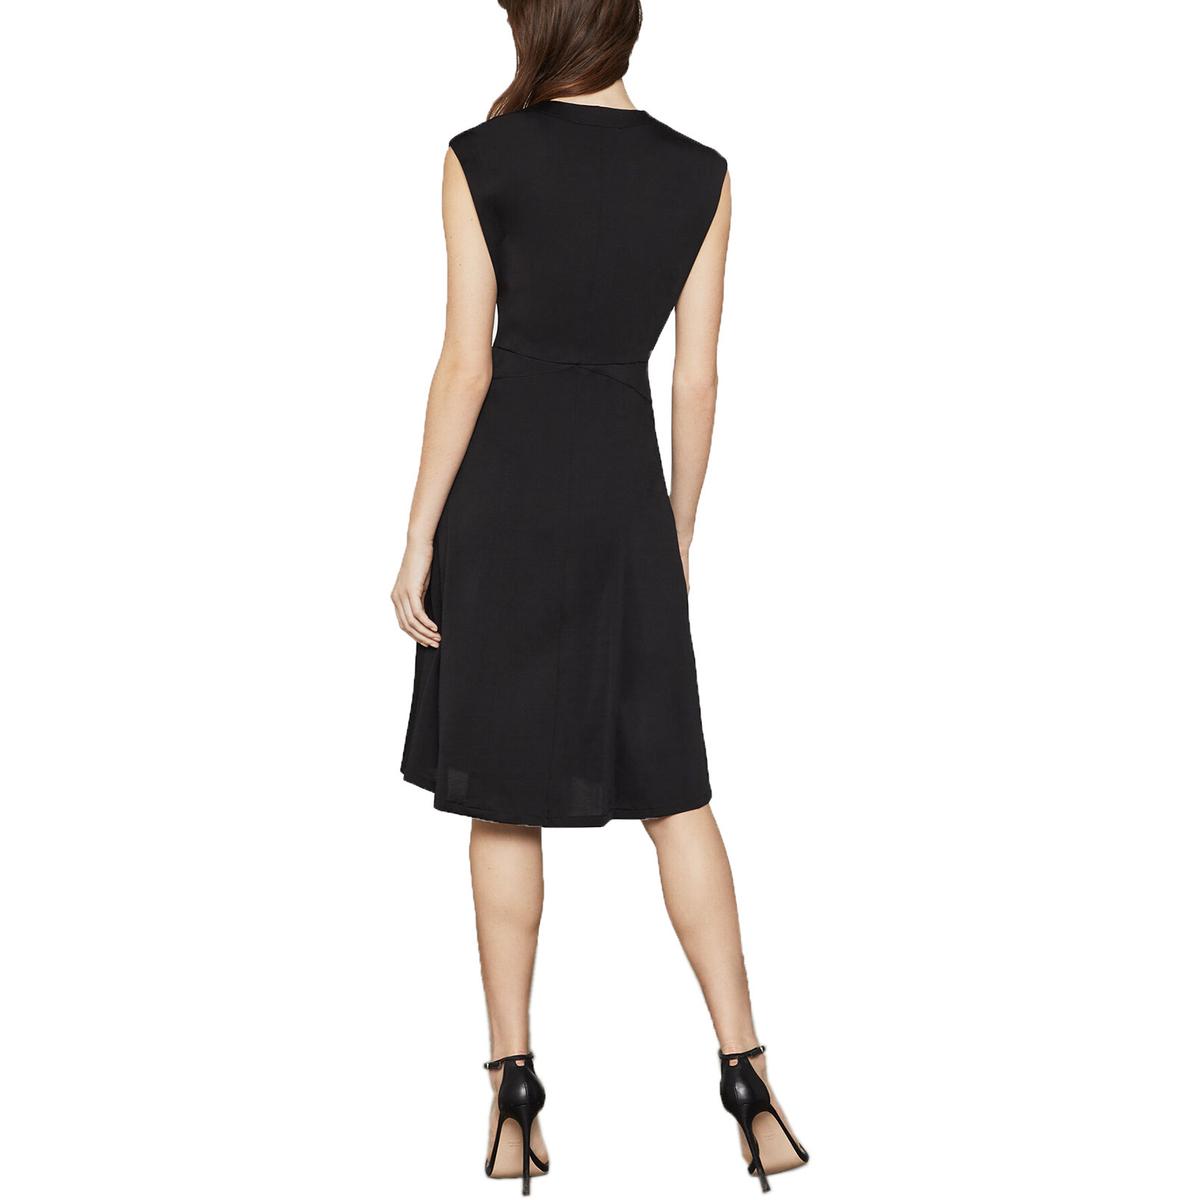 BCBG Max Azria Womens Black V-Neck Cap Sleeve A-Line Cocktail Dress XS ...